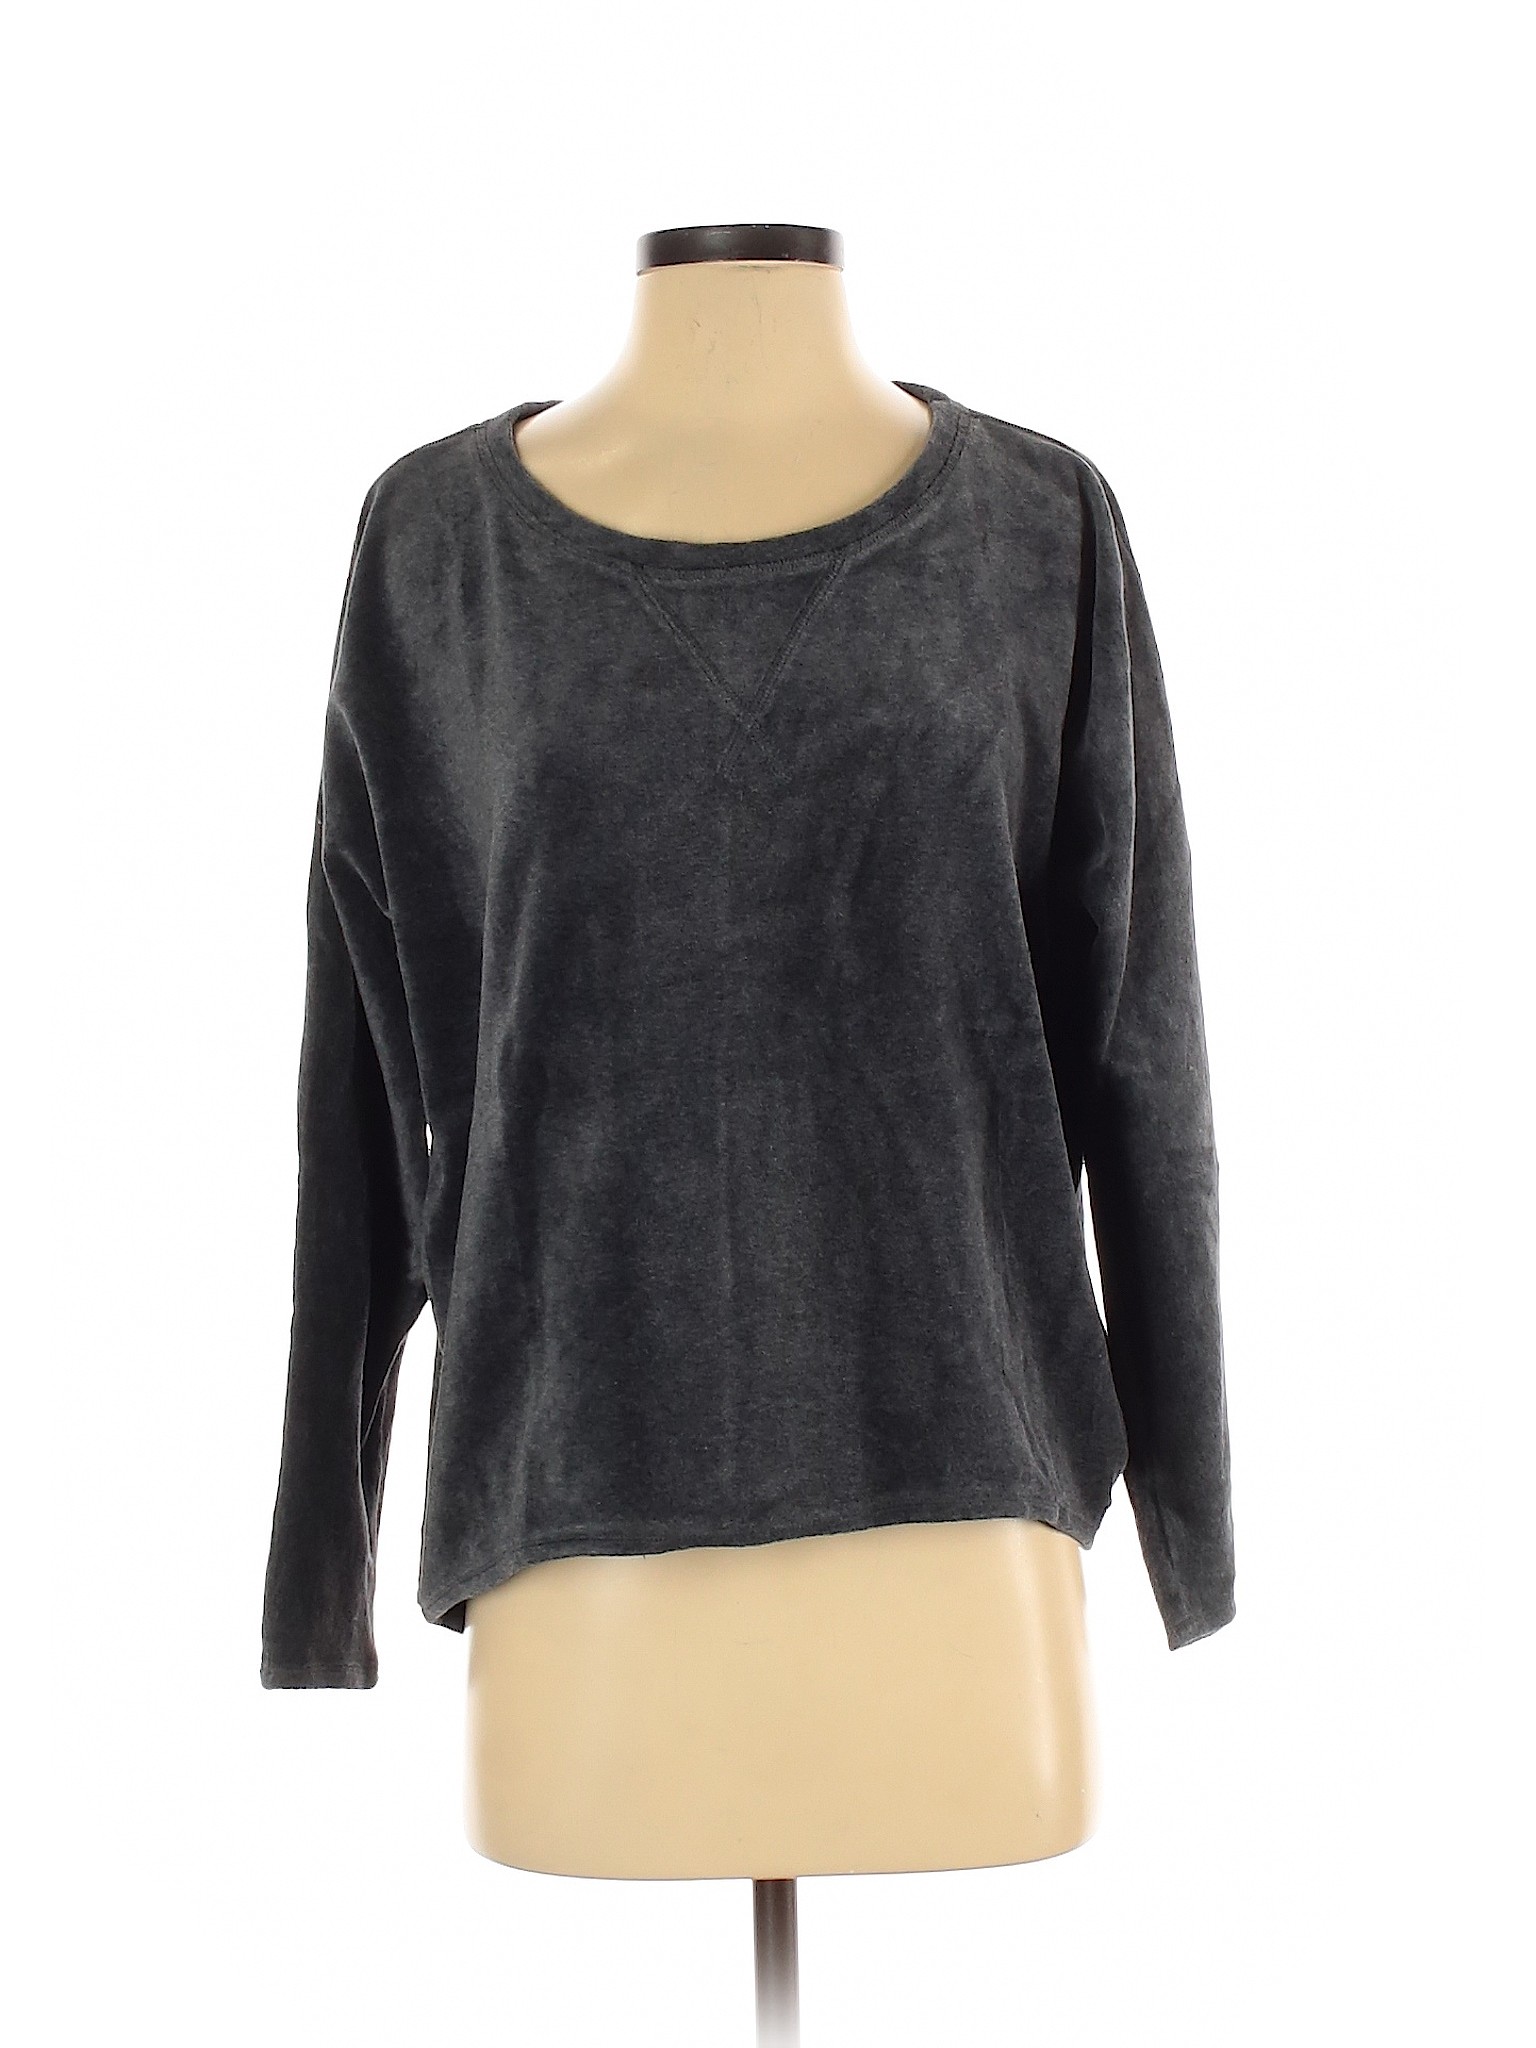 Marc New York Women Gray Sweatshirt S | eBay